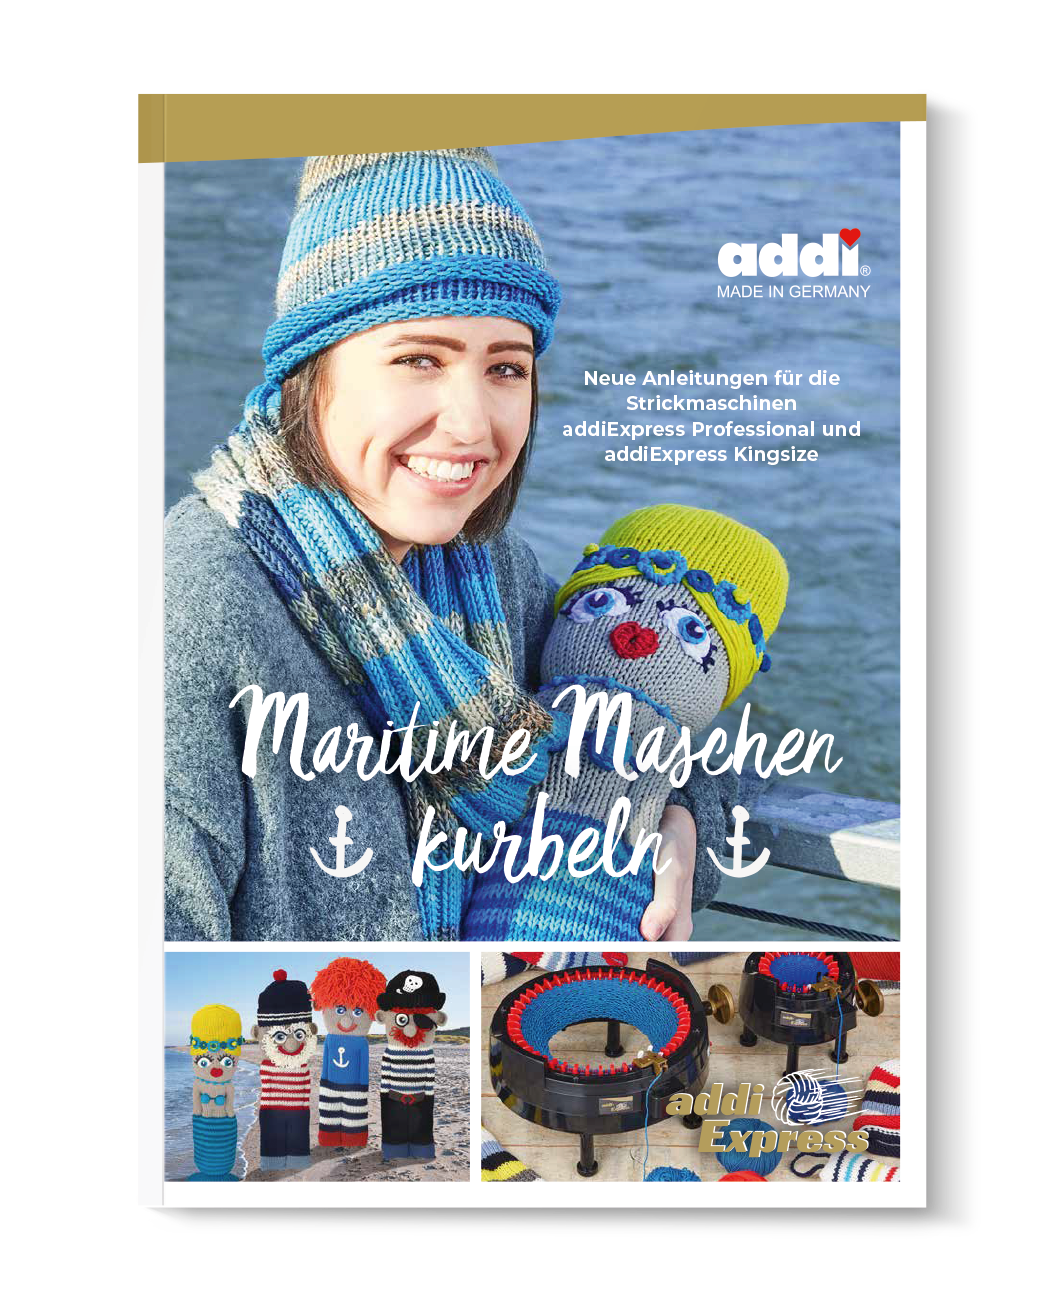 addiExpress-Anleitungsbuch "Maritime Maschen kurbeln"